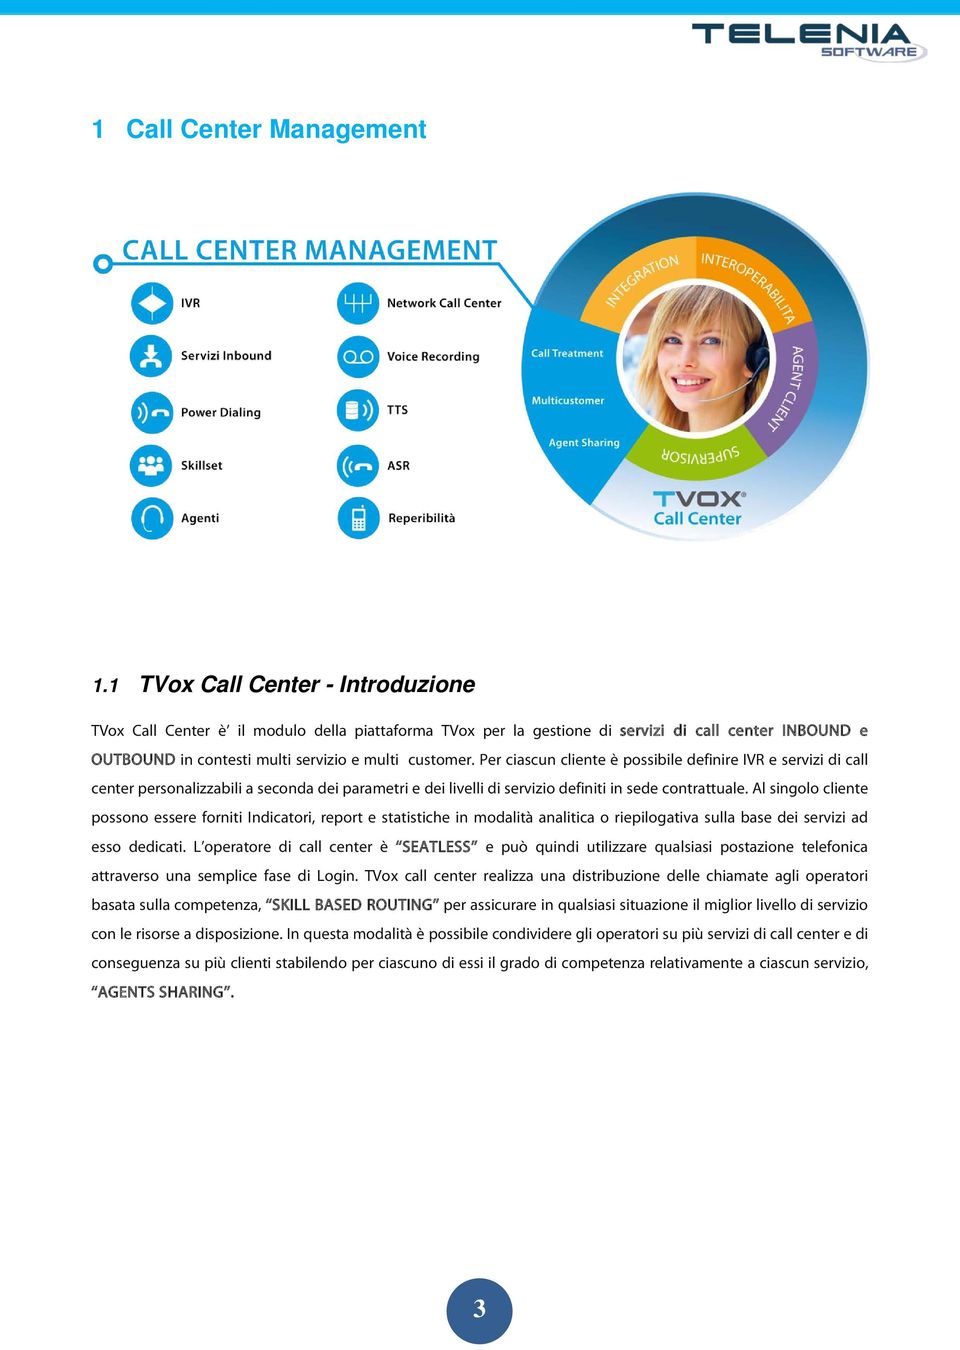 Per ciascun cliente è possibile definire IVR e servizi di call center personalizzabili a seconda dei parametri e dei livelli di servizio definiti in sede contrattuale.